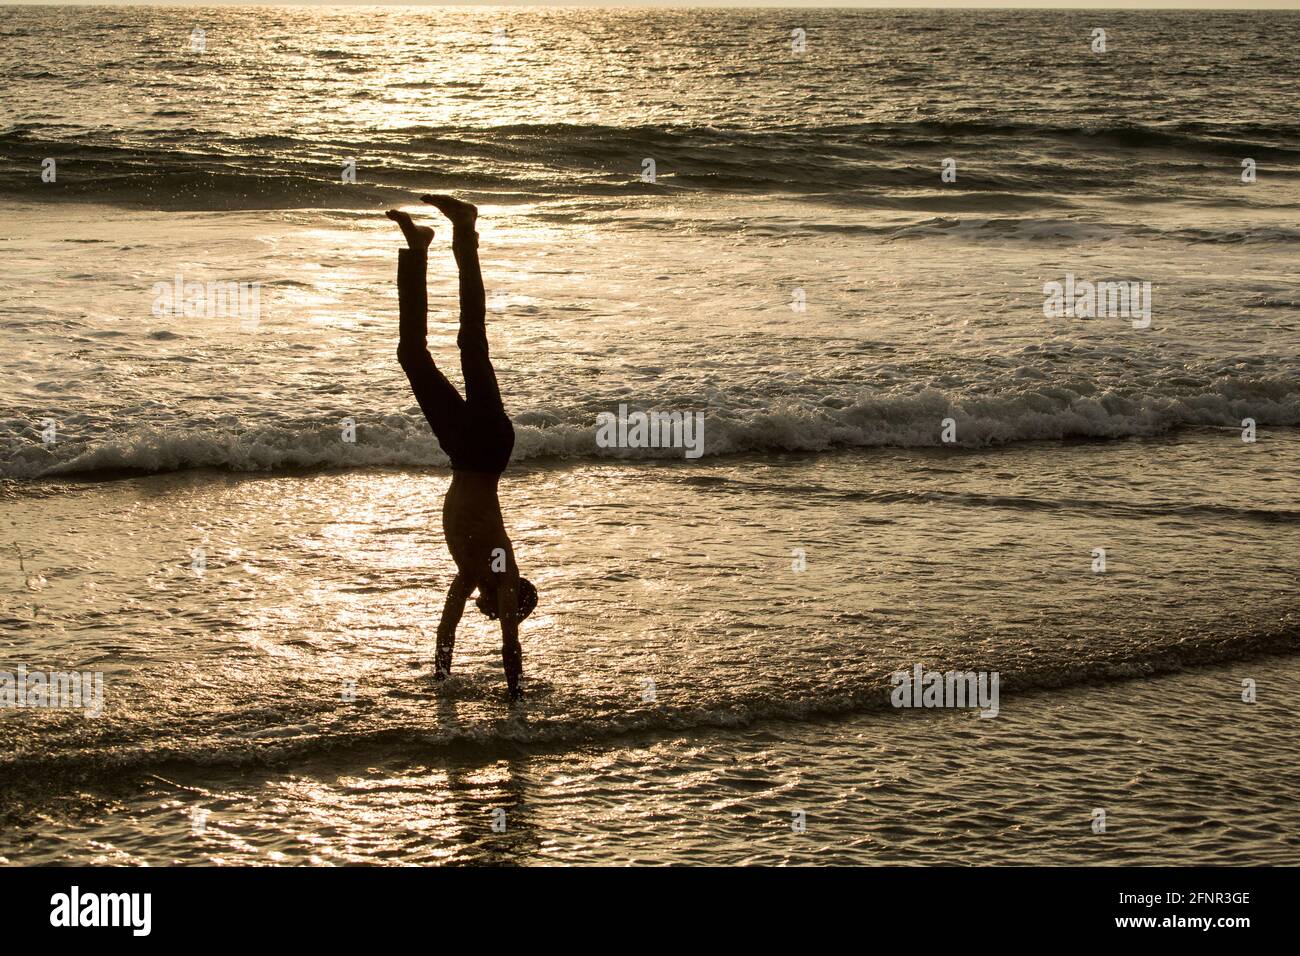 Ein Junge stellt einen Handstand in den Wellen des Meeres und kann als Silhouette vor dem Licht des Sonnenuntergangs gesehen werden, der sich in den Wellen widerspiegelt. Stockfoto